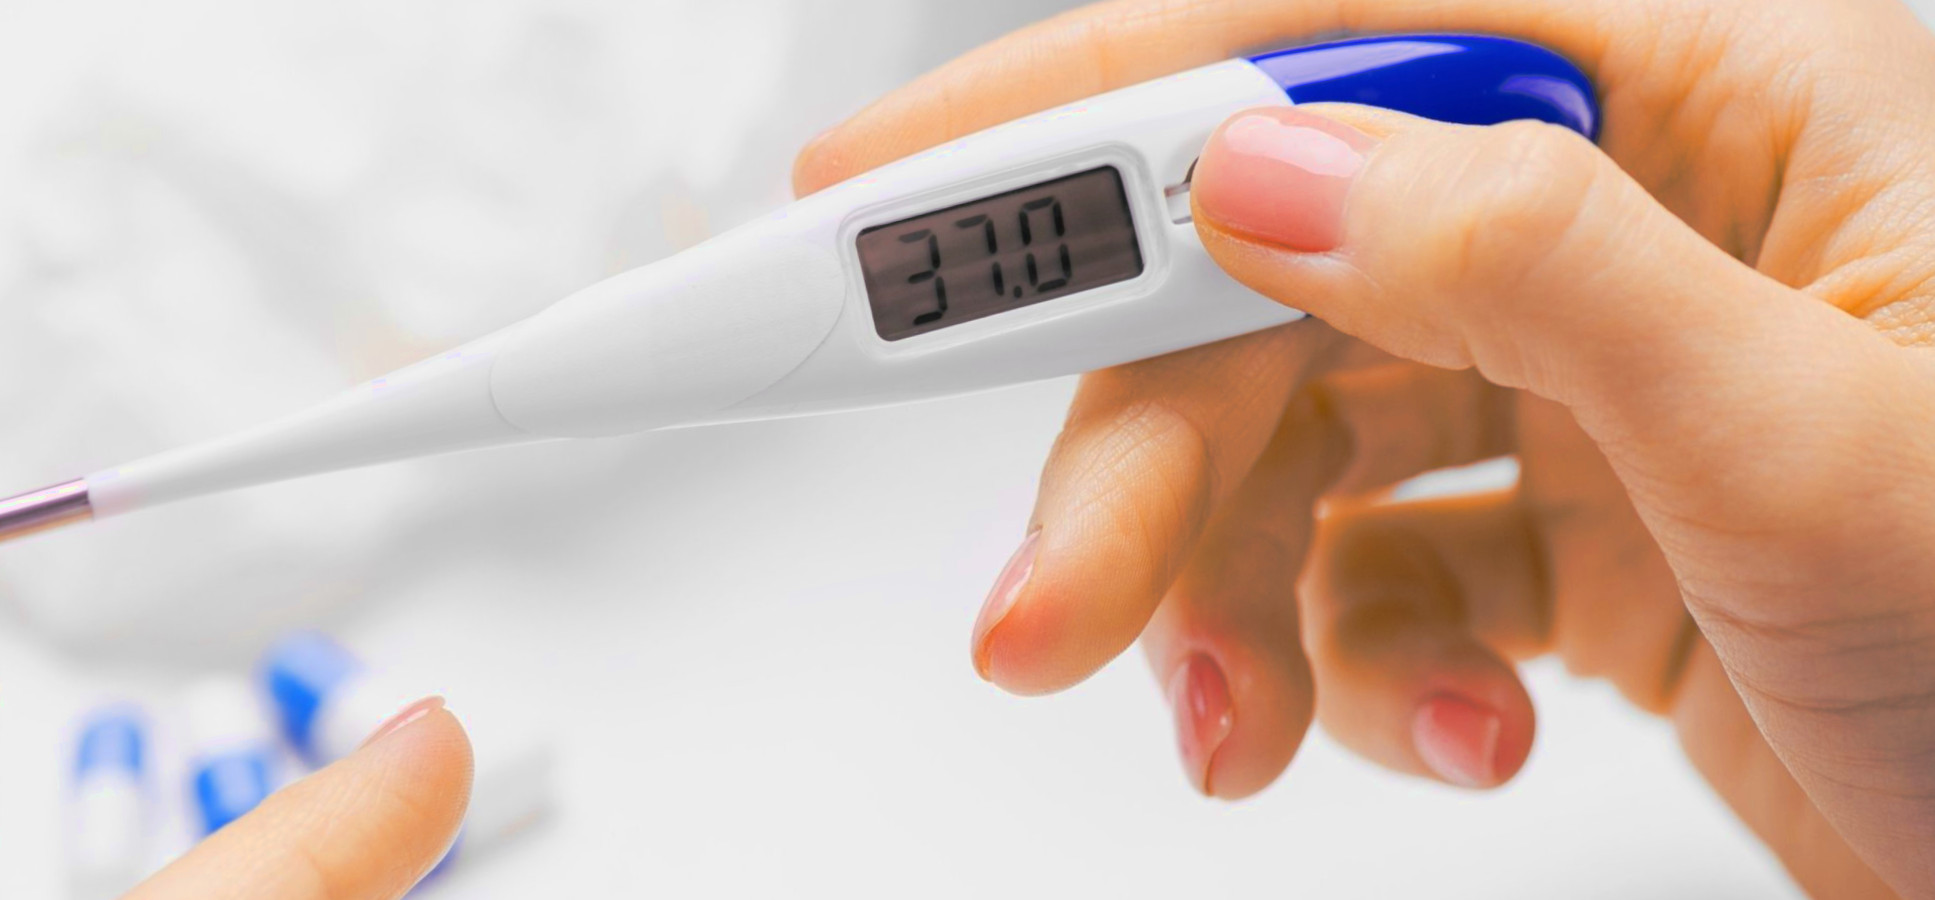 Termometro per la febbre diverse tipologie : a galinstan , laser e digitale